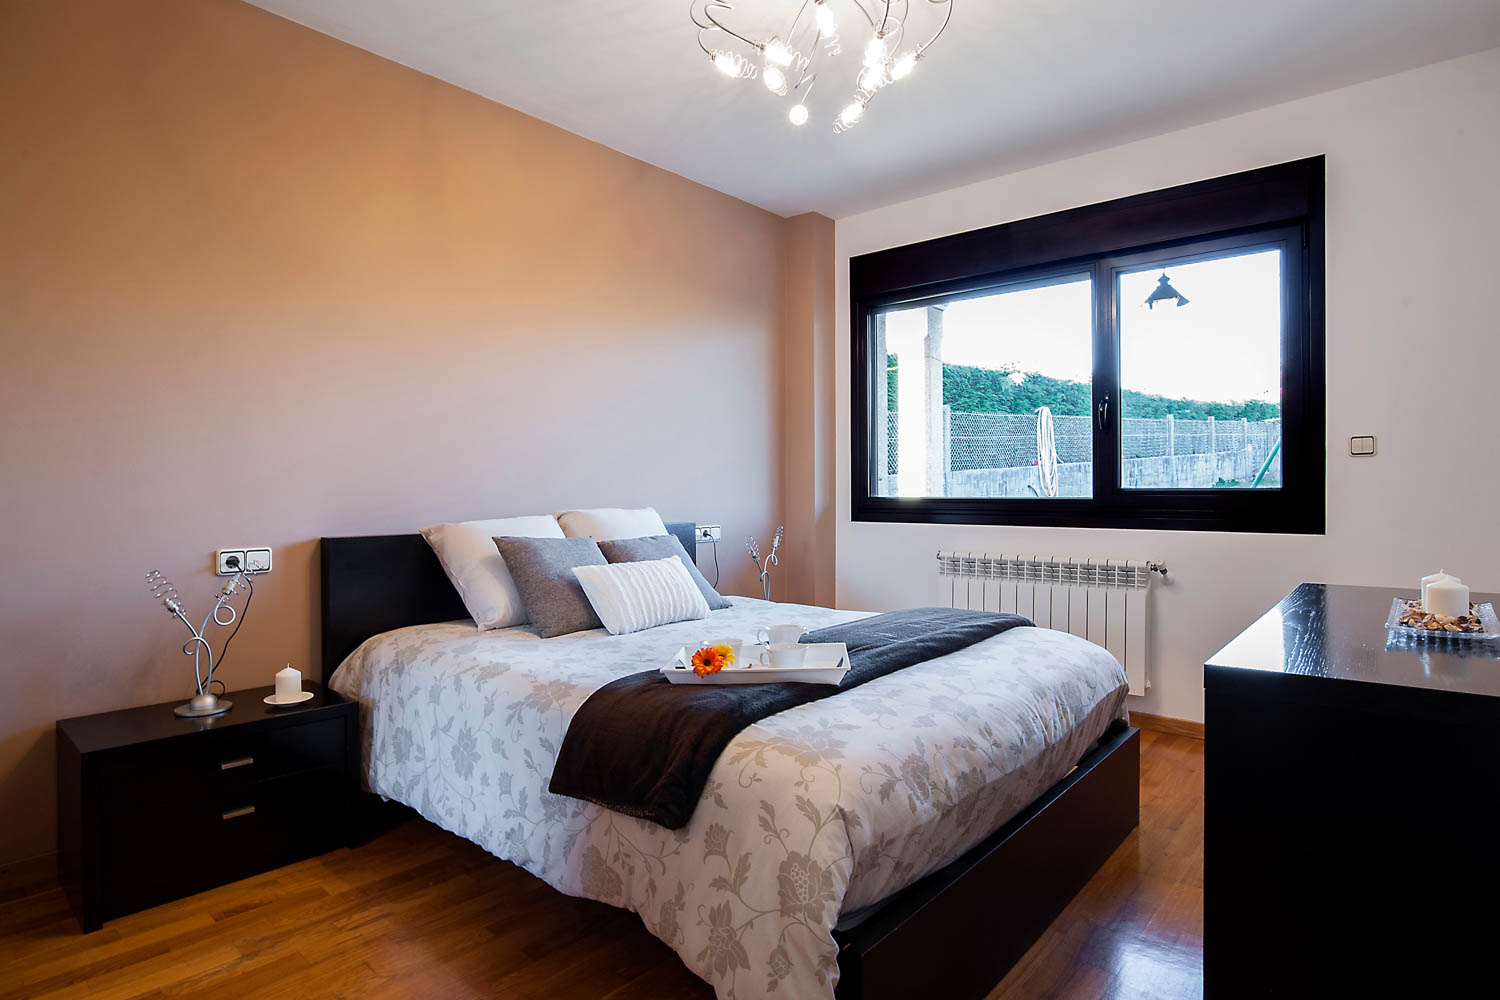 Dormitorio principal vivienda unifamiliar Coirós_ Textiles de cama en tonos beige con motivos de flores y muebles oscuros_ ventana